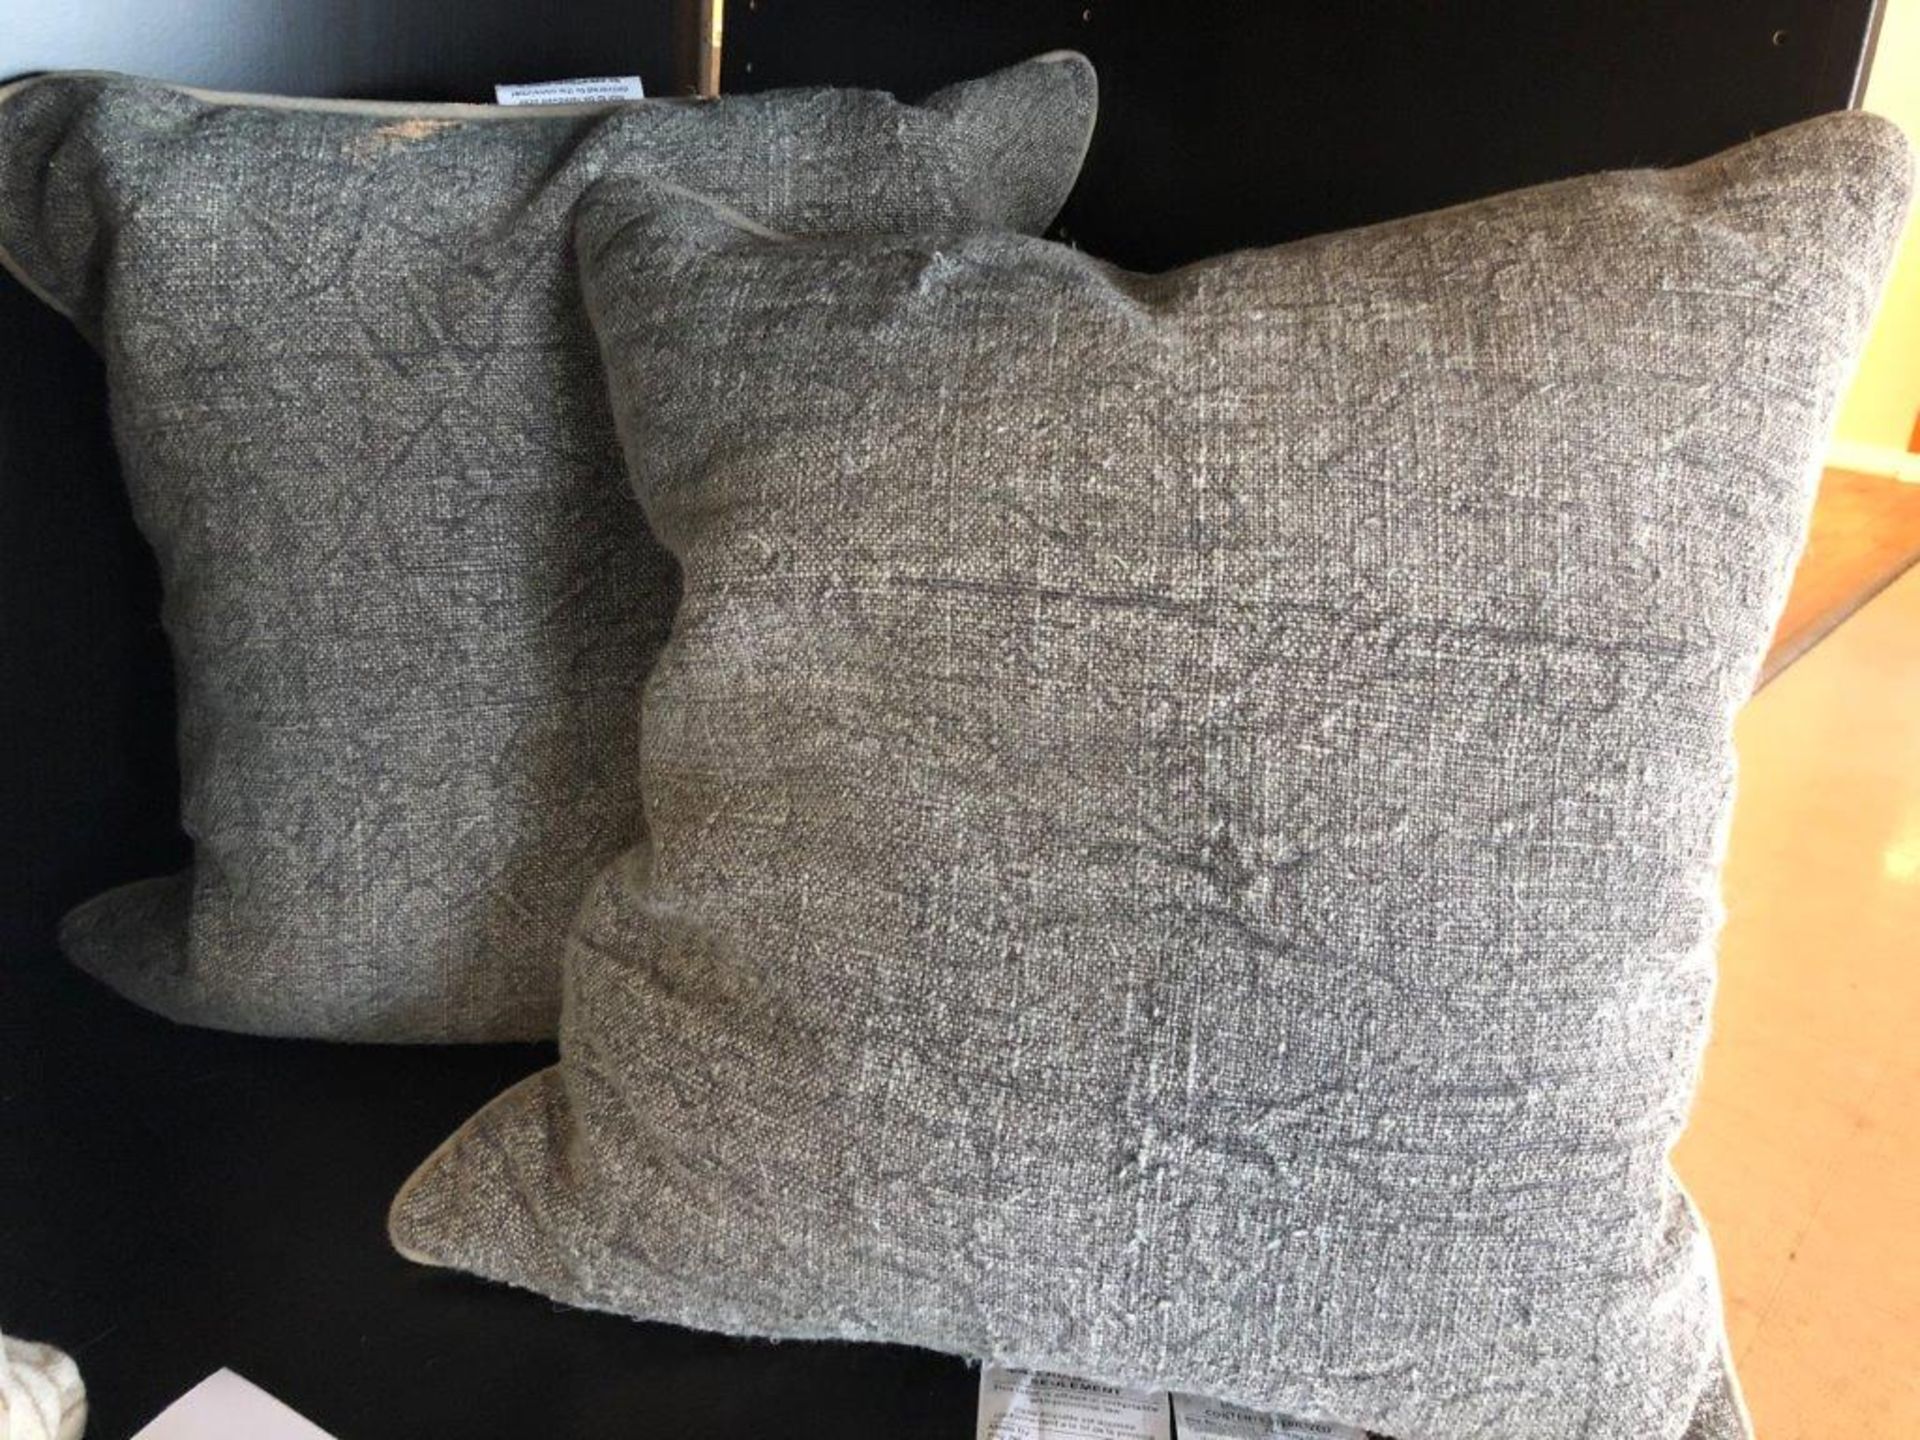 Decorative Pillows, 20"x20", Dara Grey, 2 pcs